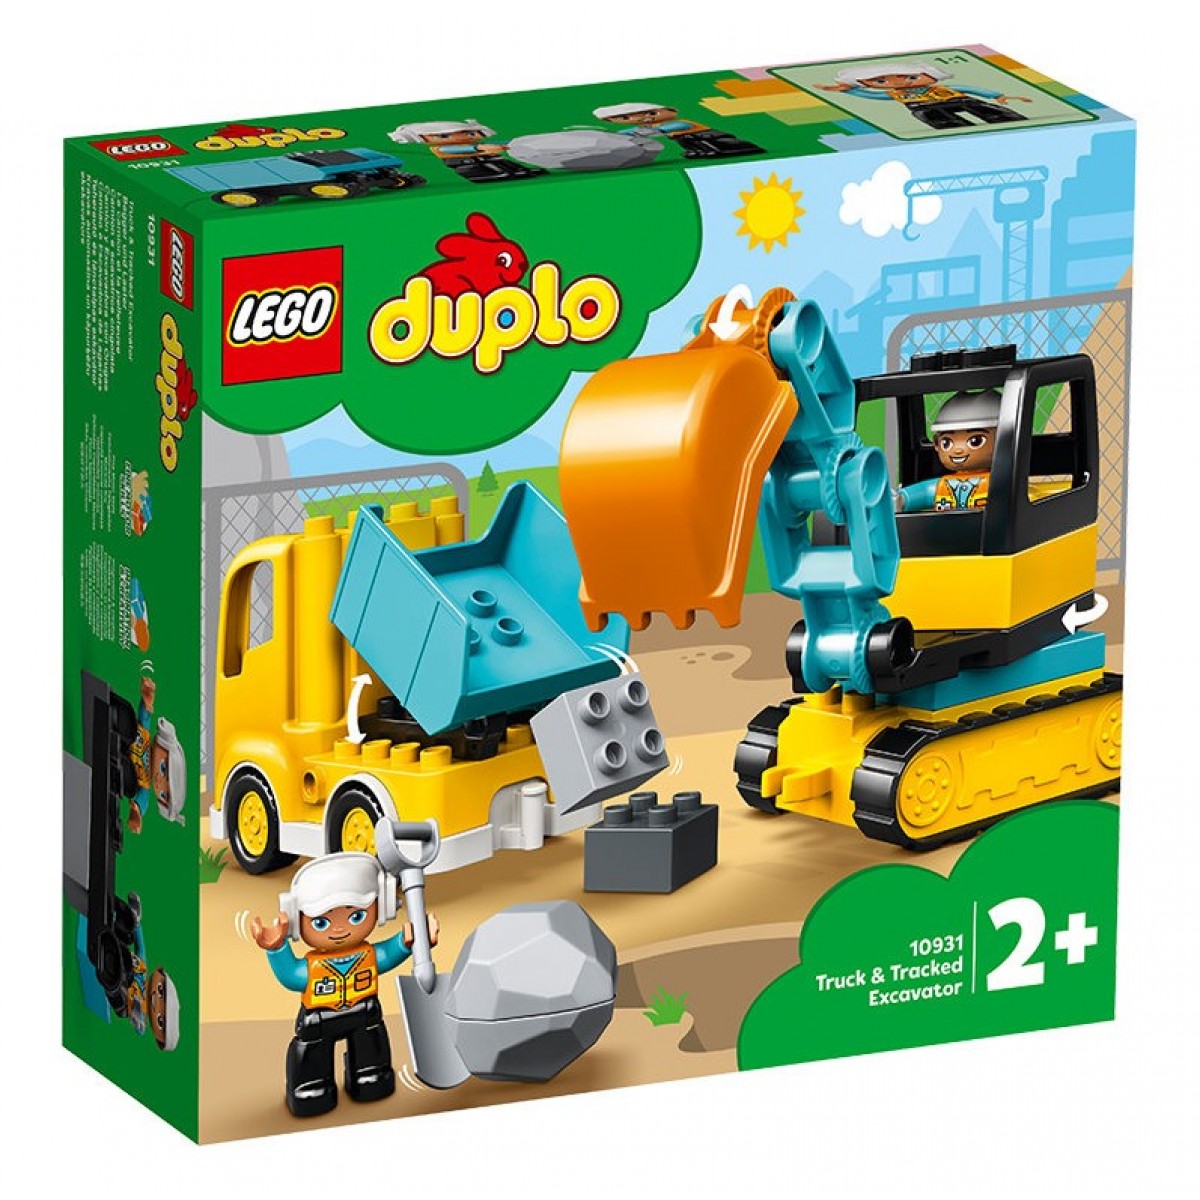 LEGO樂高得寶系列 翻鬥車和挖掘車套裝10931拼插積木玩具